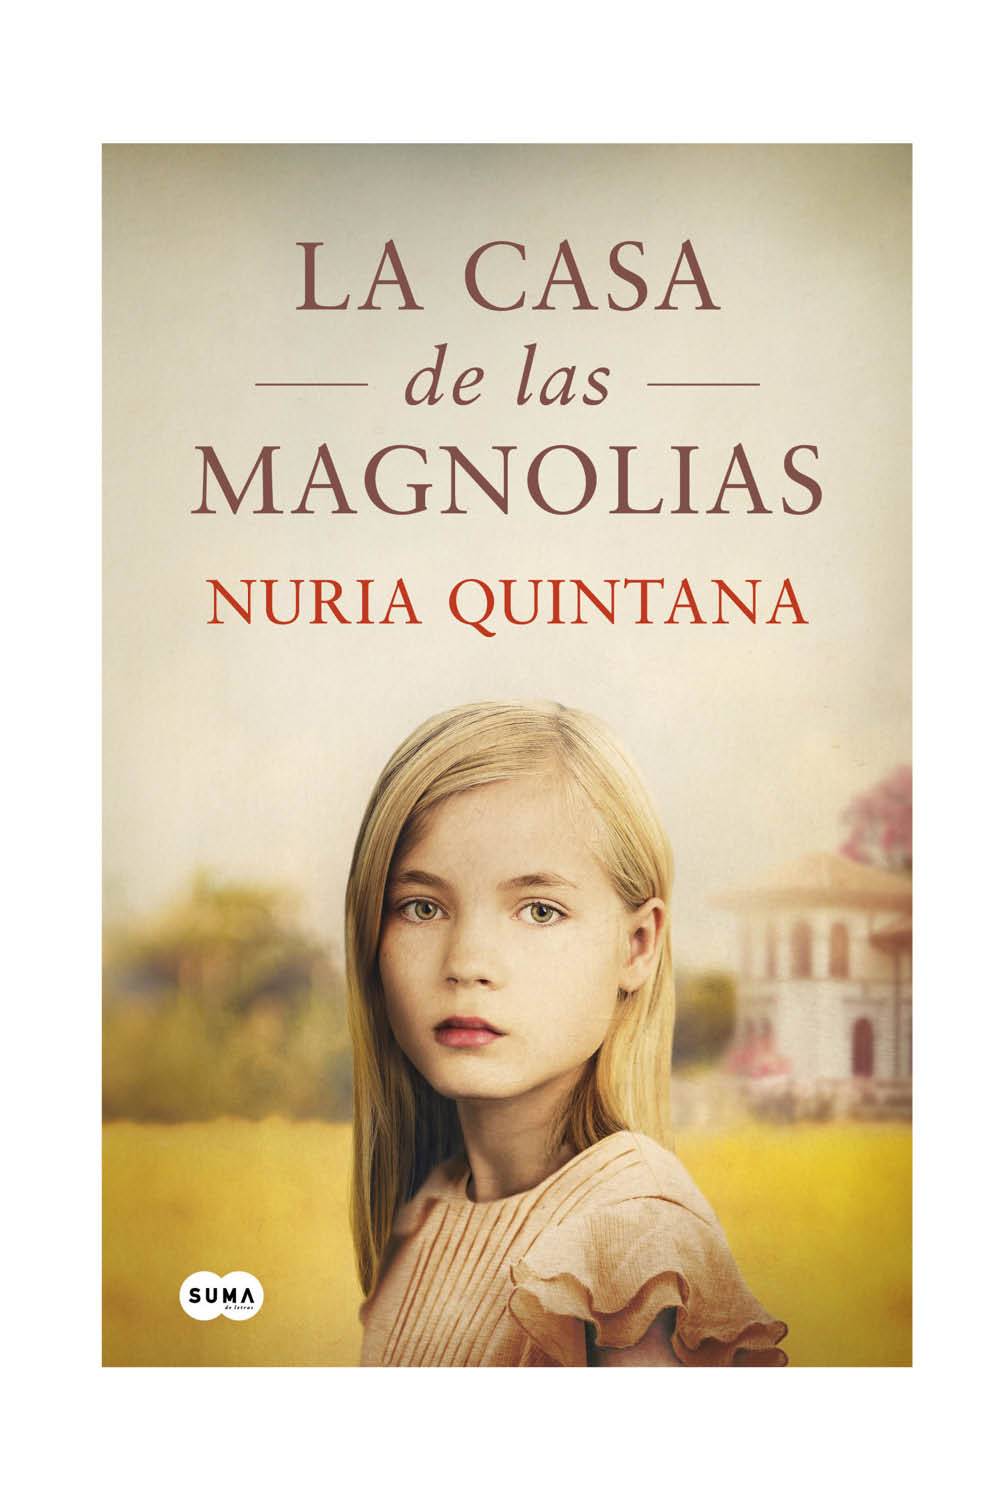 LIBROS RECOMENDADOS: La casa de las magnolias de Nuria Quintana